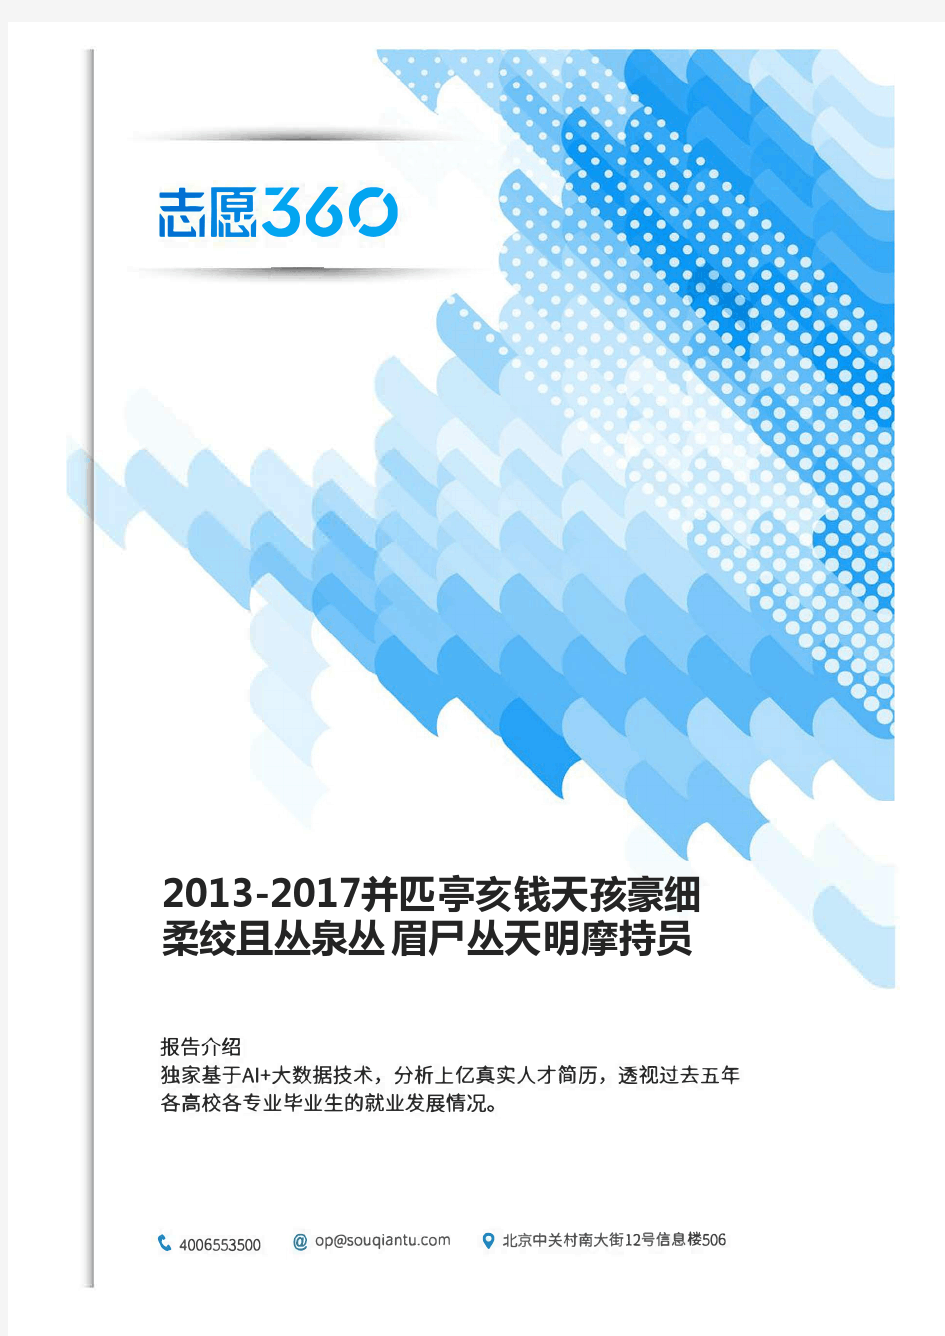 2013-2017年北京交通大学计算机类专业毕业生就业大数据报告